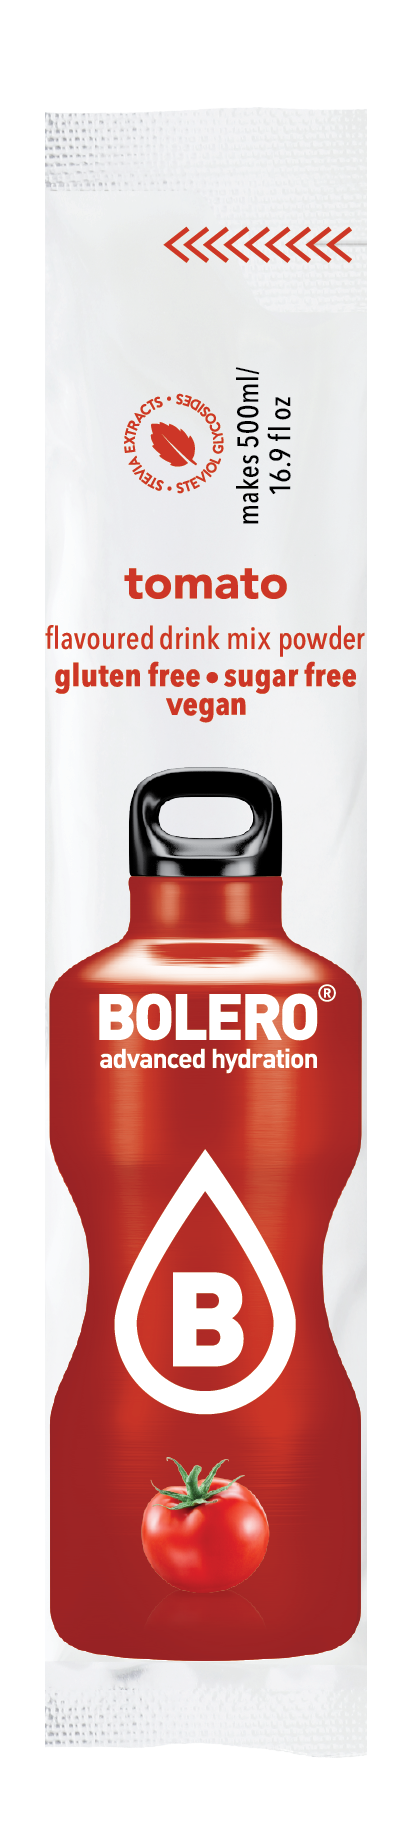 Bolero Advanced Hydration - Tomato Small Sachets (Box of 12 Small Sachets)